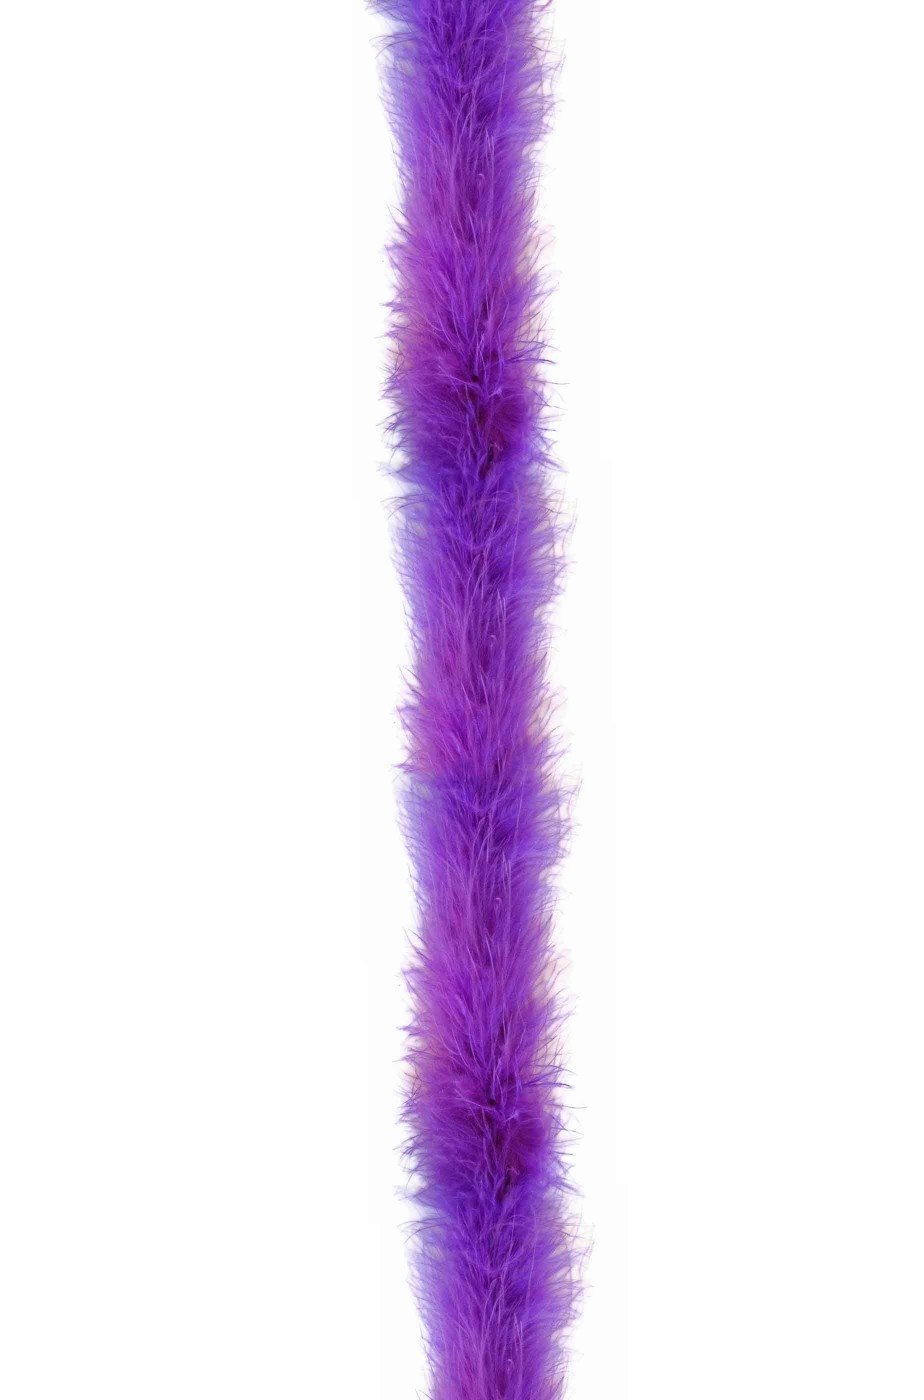 Boa di marabou viola gr 45 circa 190 cm